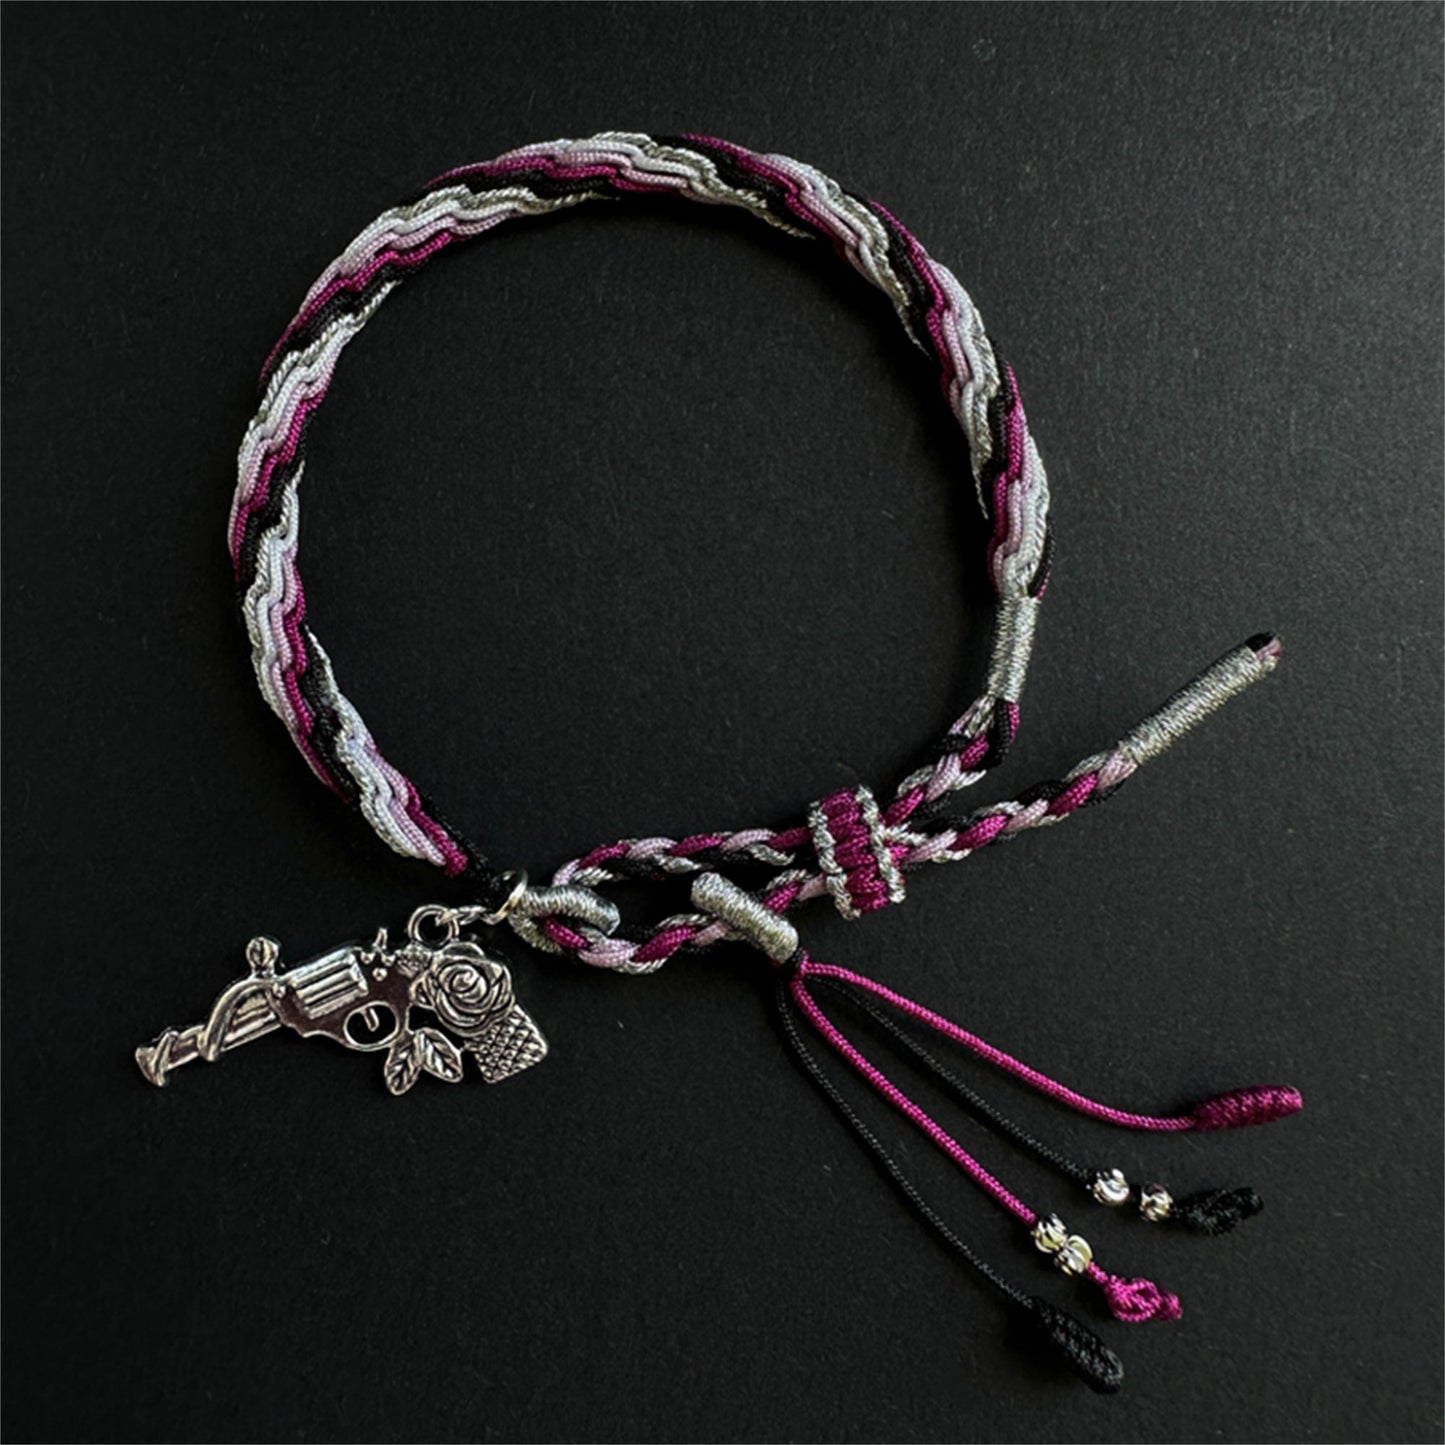 Honkai Star Rail Luocha Bracelet Hand-Woven Bracelet